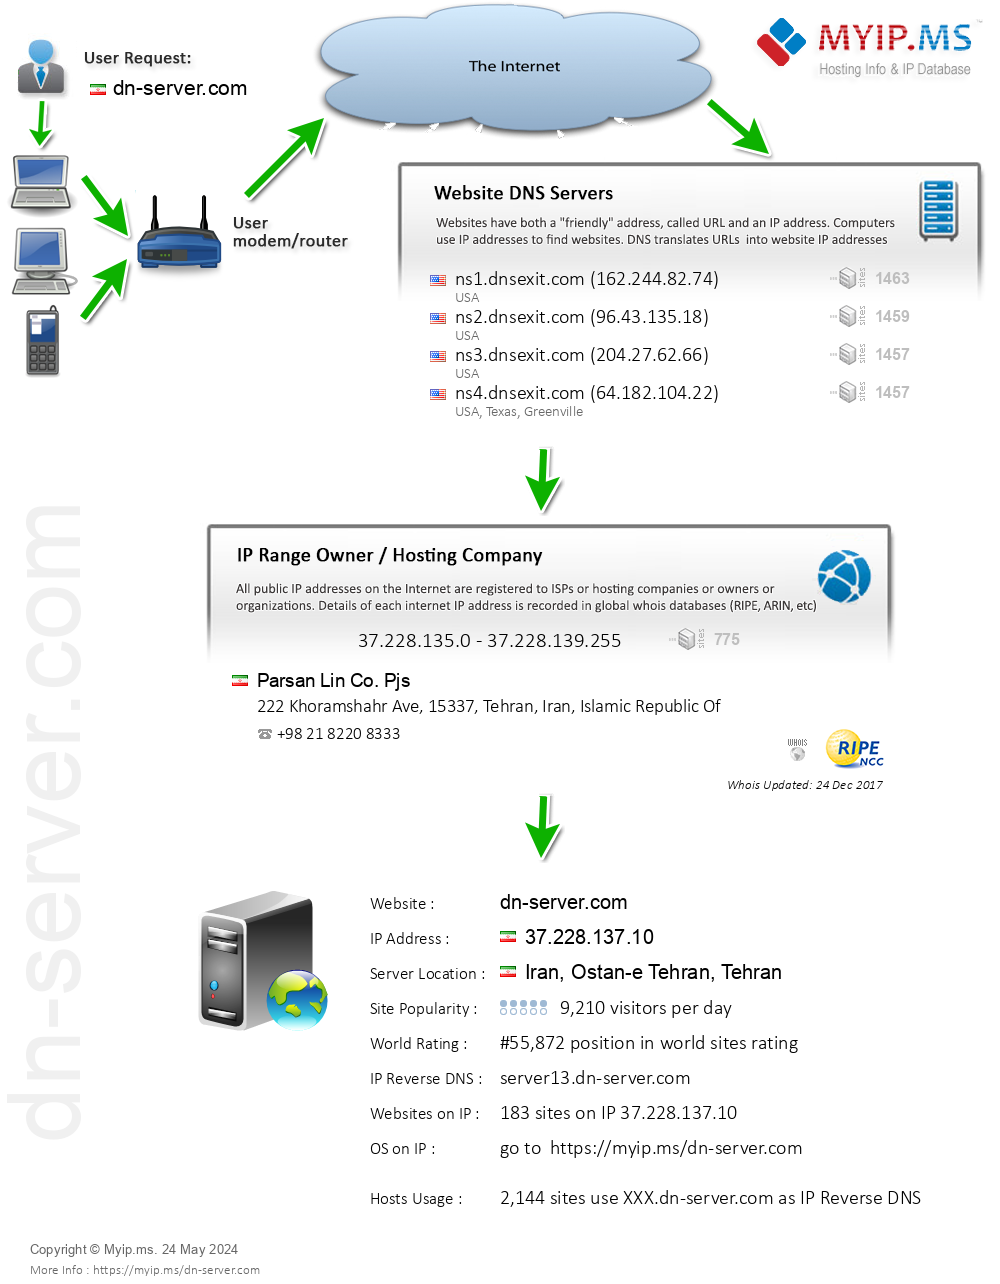 Dn-server.com - Website Hosting Visual IP Diagram